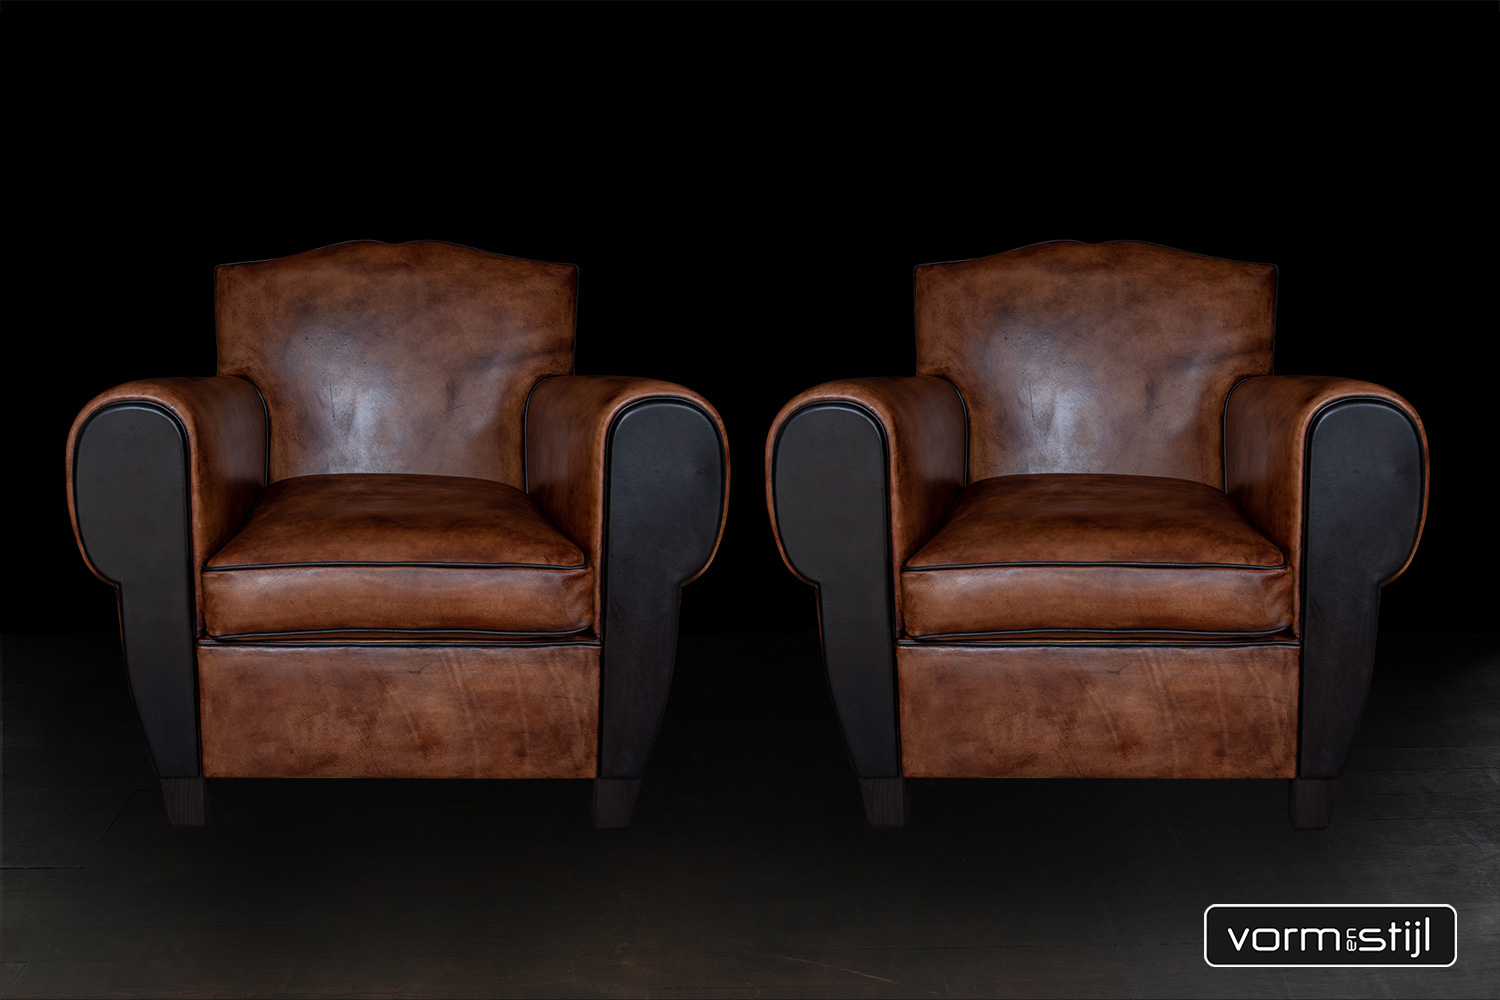 Exclusieve Art Deco fauteuil(s) in dik zadelleer (rundleer)